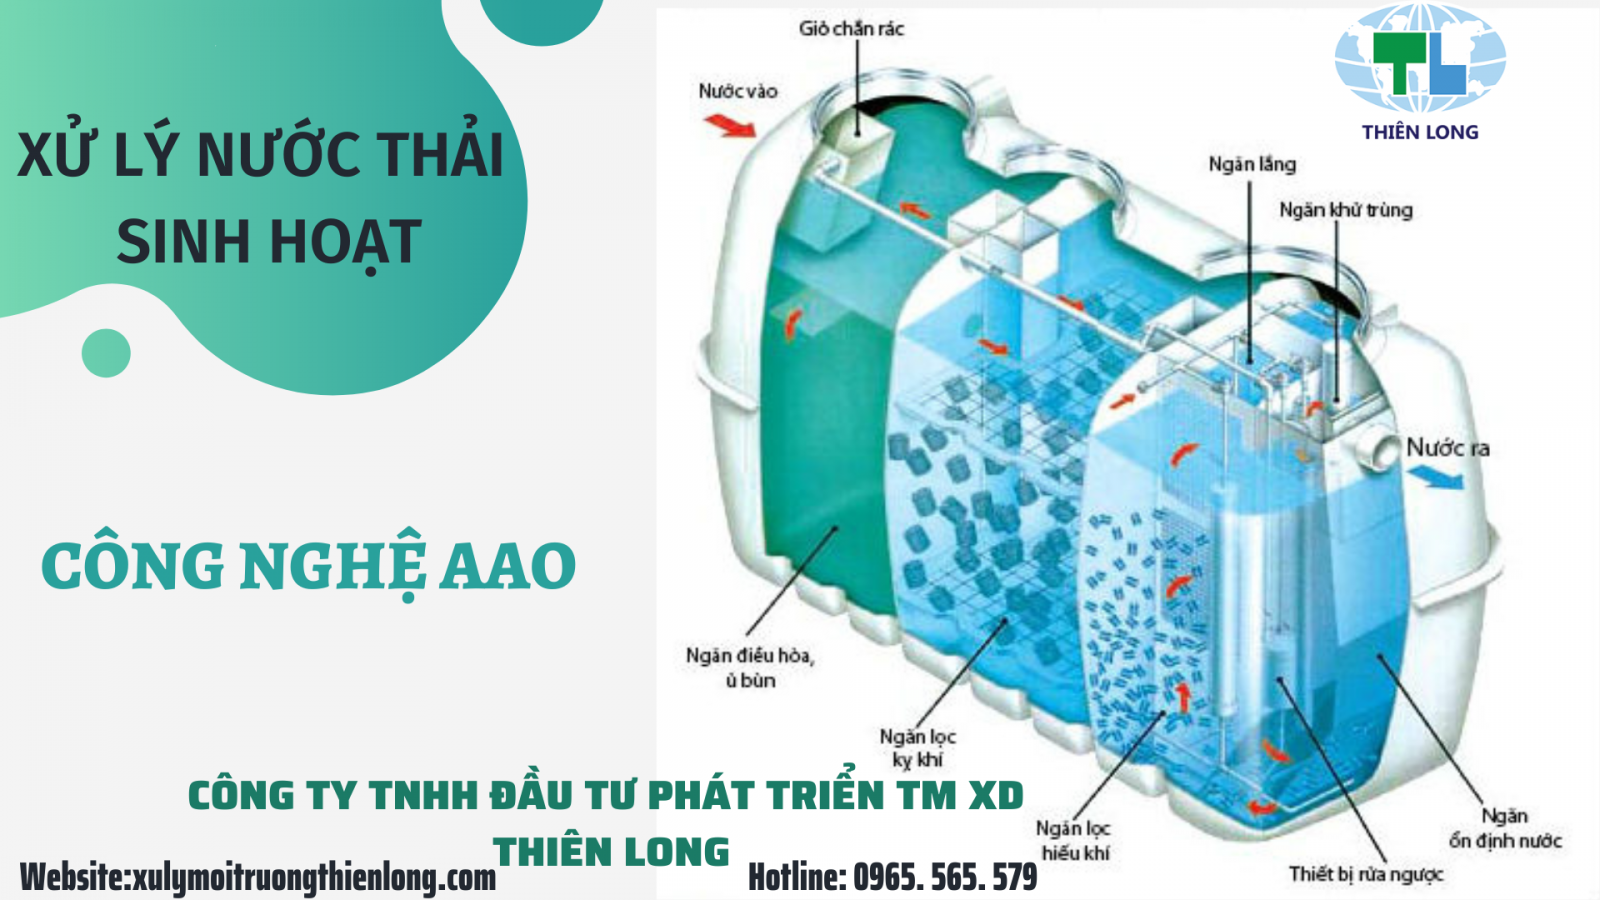 AAO - Công nghệ xử lý nước thải sinh hoat